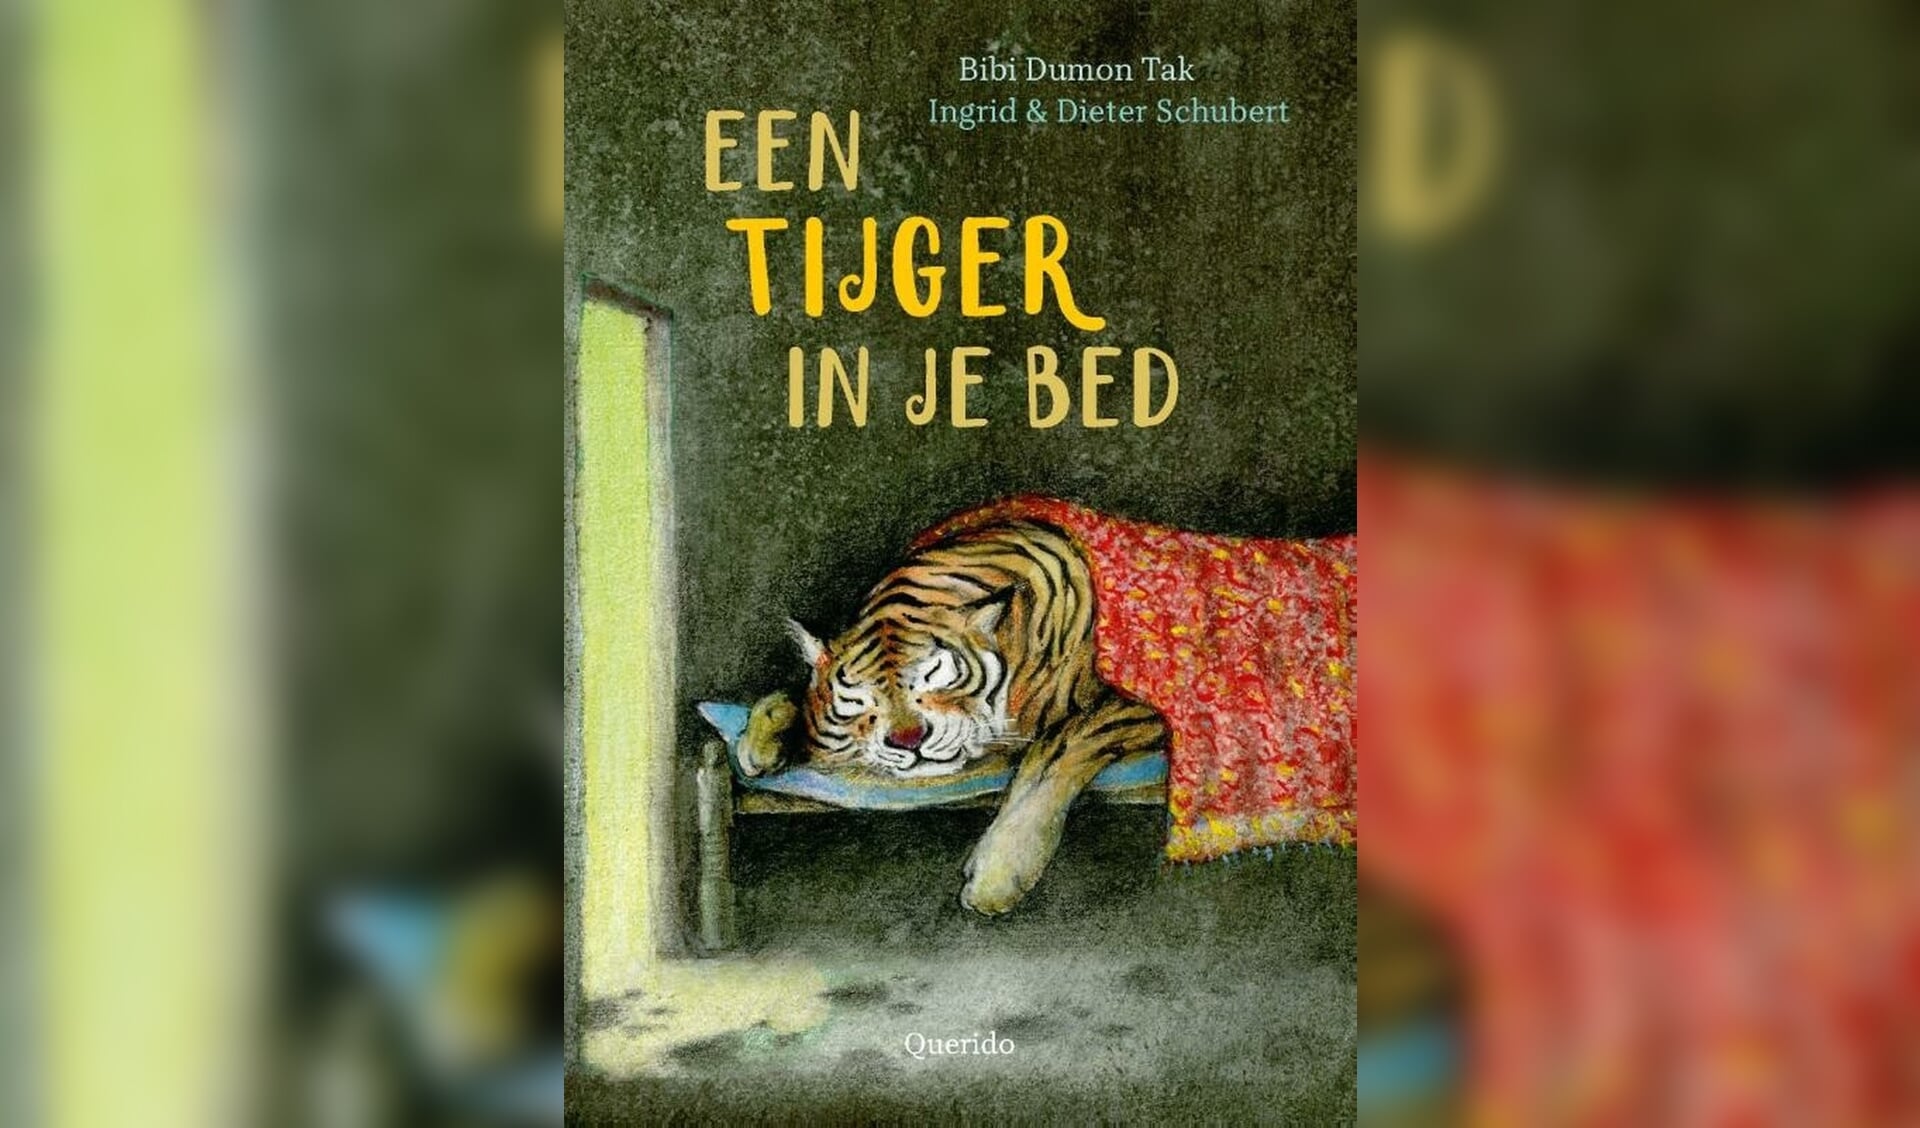 De Kinderboekenweek leestip van vandaag is 'Een tijger onder je bed’ van Bibi Dumon Tak.